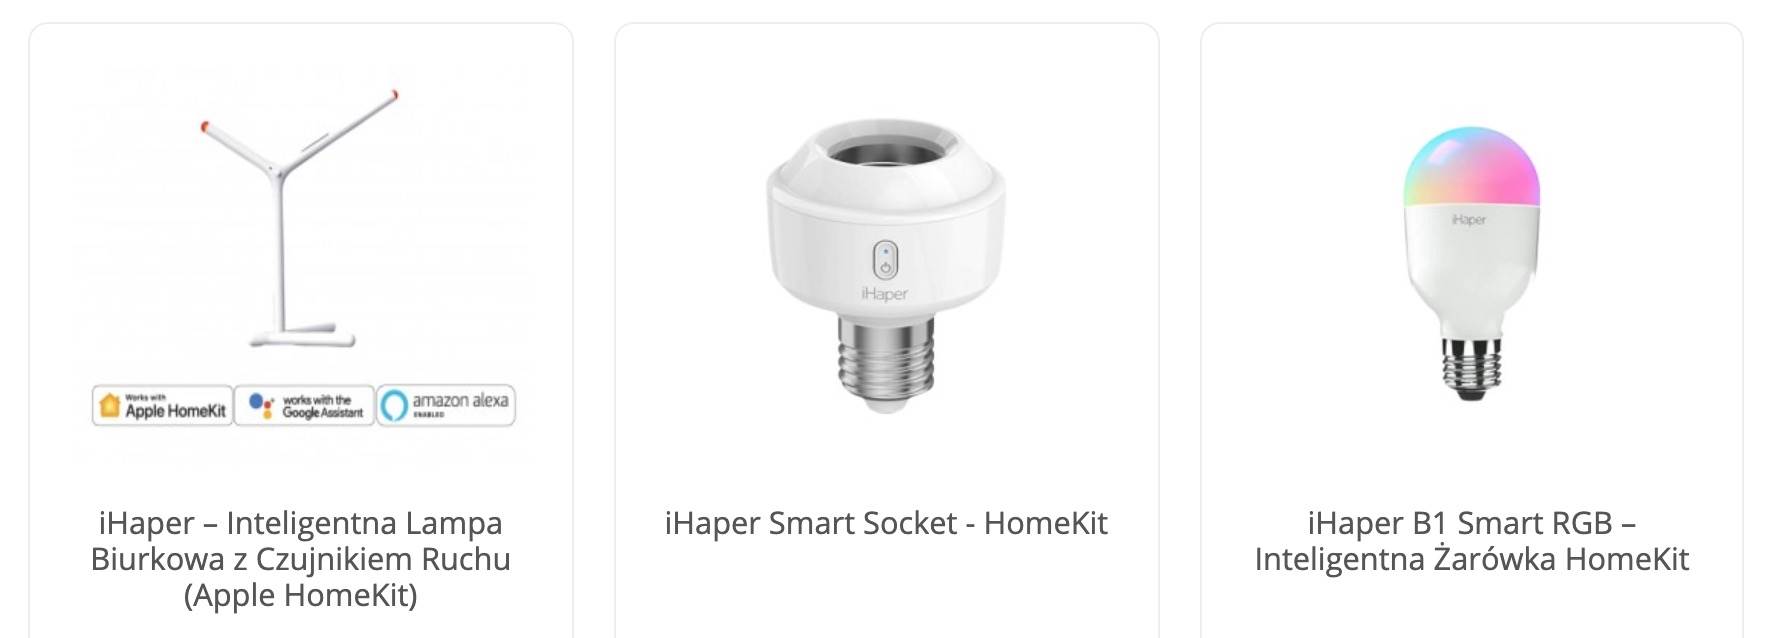 Tydzień gorących promocji na produkty HomeKit polecane, ciekawostki ThinkStore, homekit  Każdy z nas lubi promocje dlatego dziś chcemy poinformować Was o bardzo fajnej akcji, które pozwala kupić produkty HomeKit w promocyjnych cenach. 1@2x 8